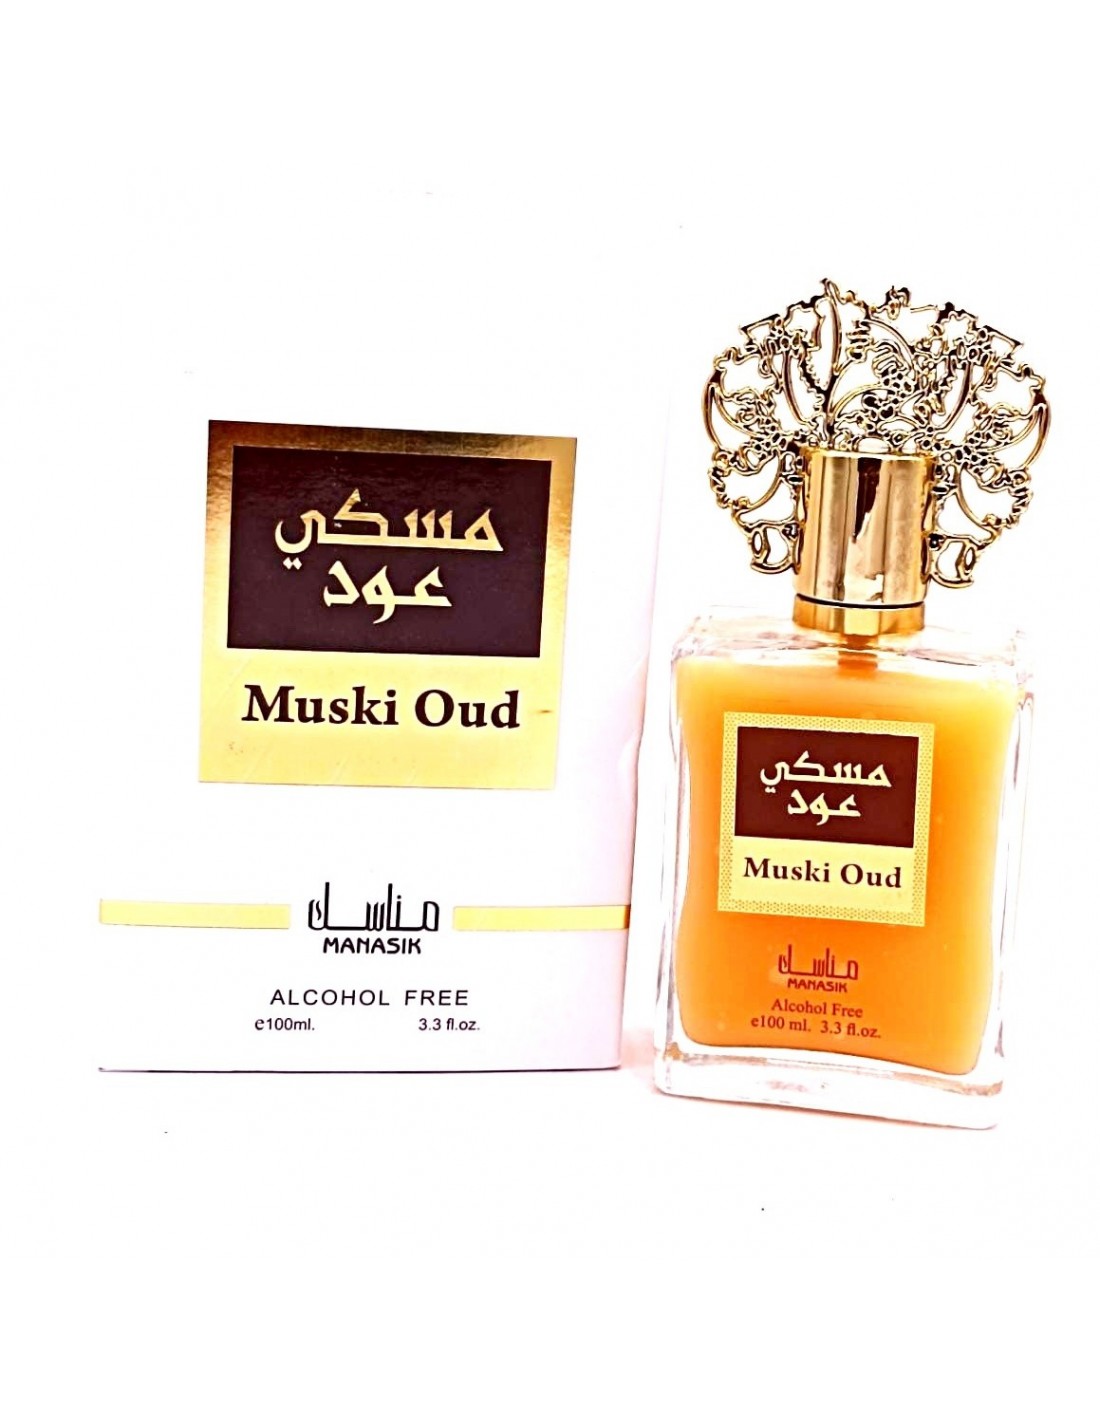 Misbruik koper Beperkt Musk Oud - Manasik Alcoholvrije Parfum